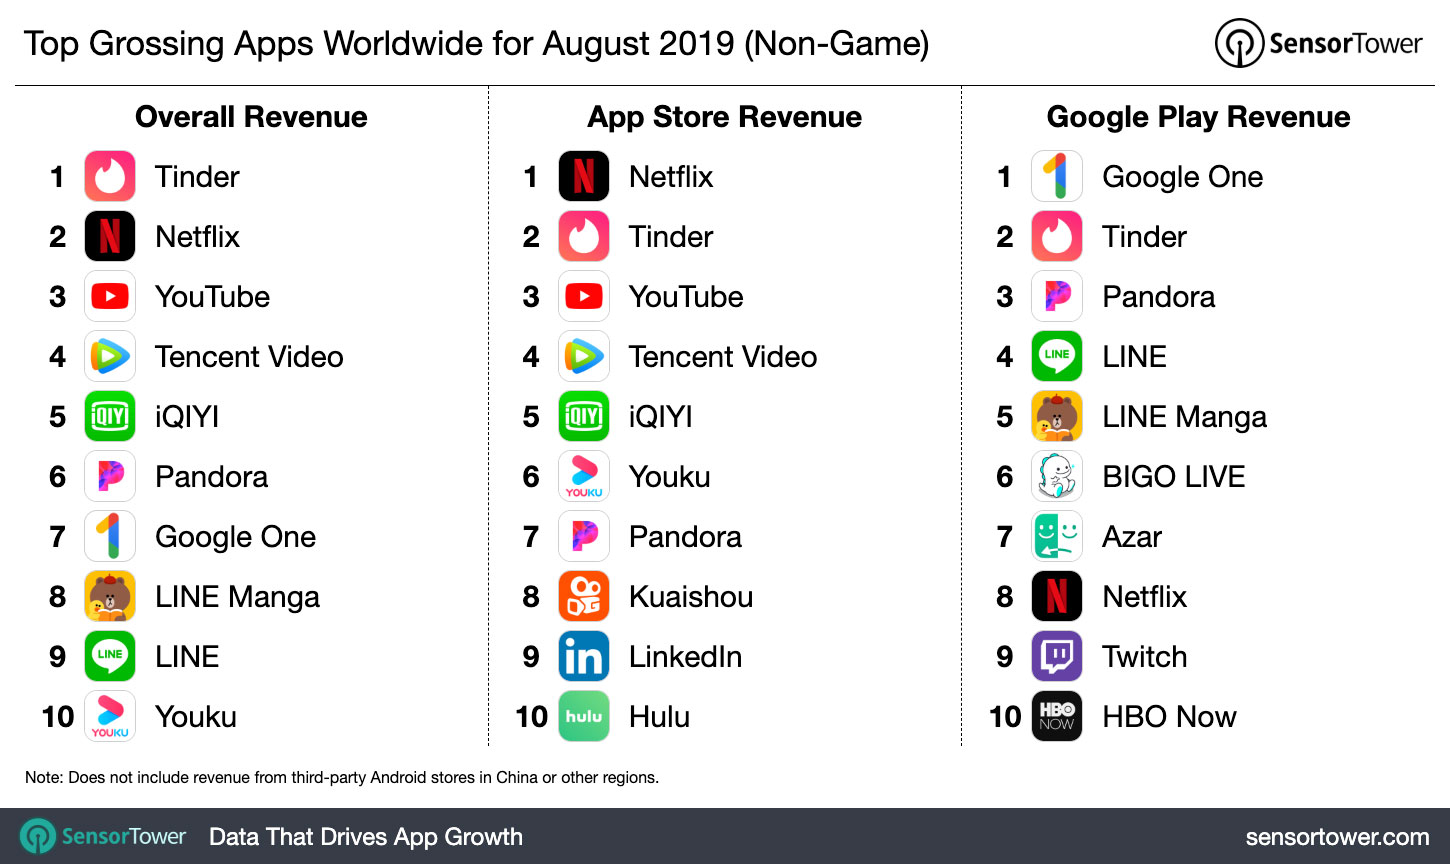 كان Tinder هو التطبيق الذي حقق أكبر إيرادات في أغسطس من جميع أنحاء العالم